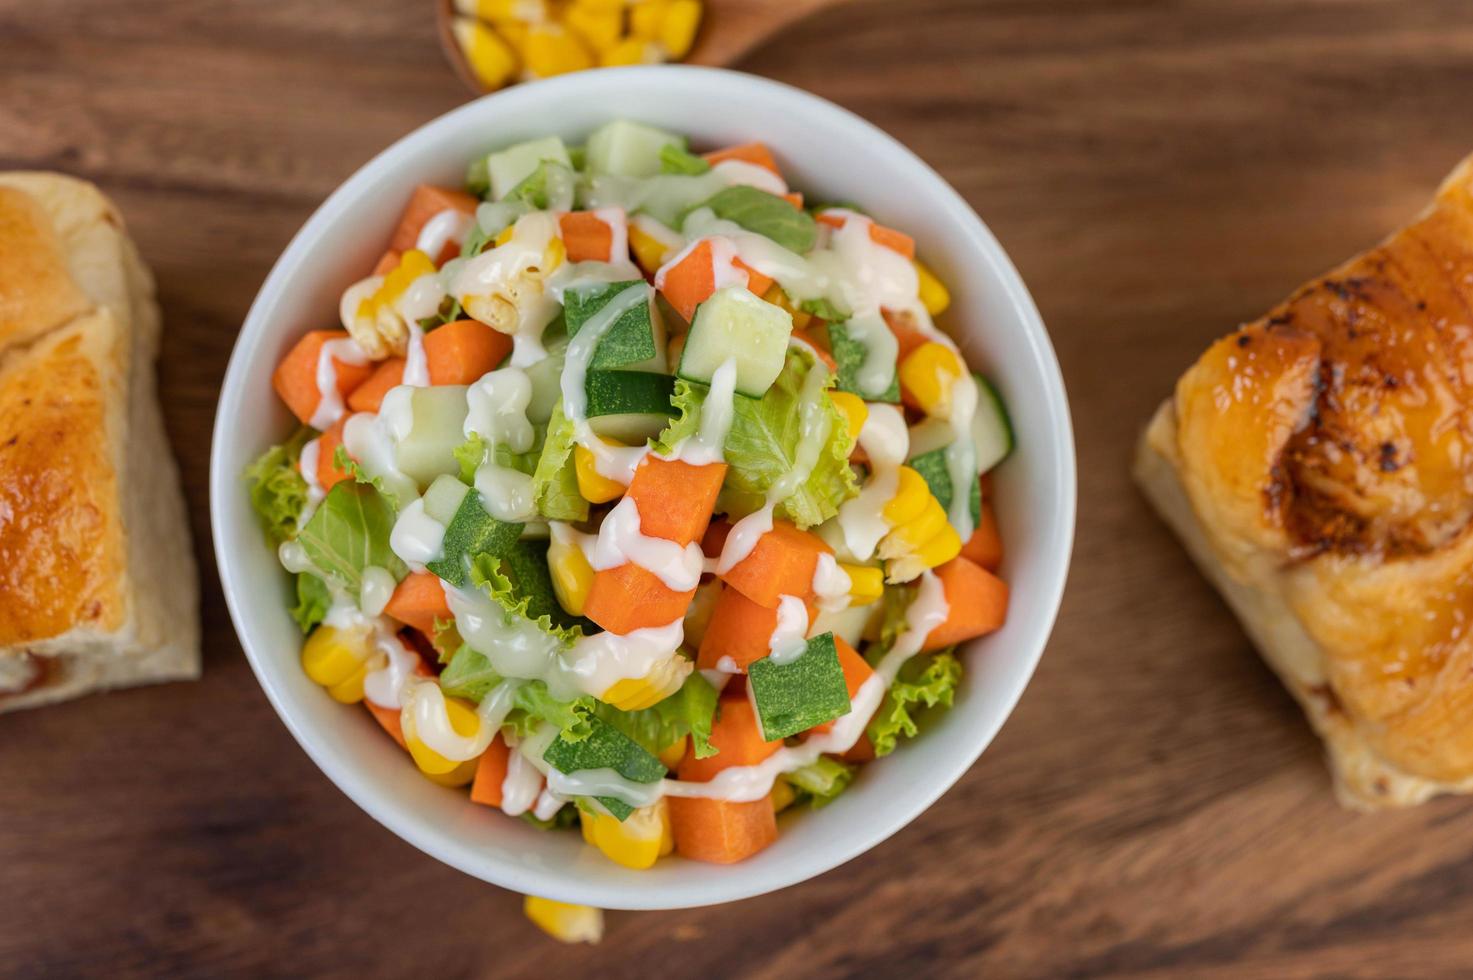 salade de concombre, maïs, carottes et laitue photo